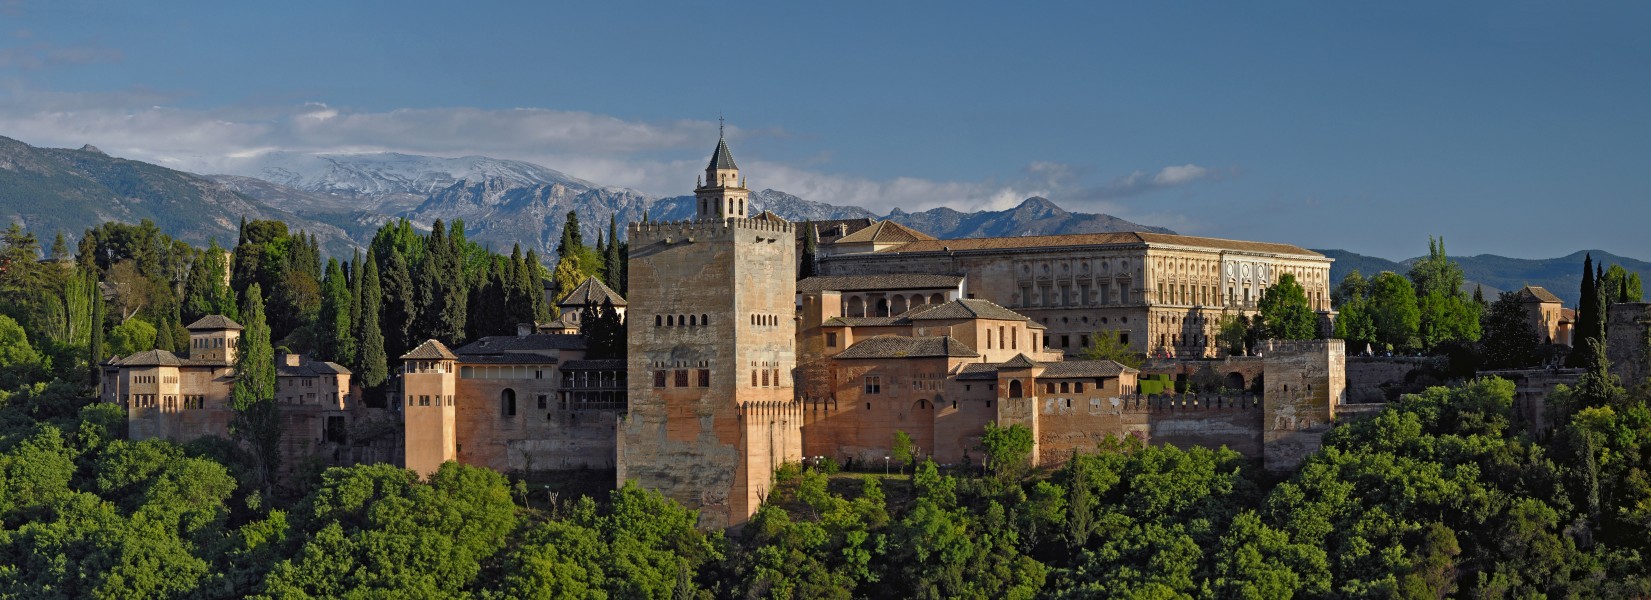 Nasrid Palaces and Palace of Charles V. Alhambra, Granada. Spain